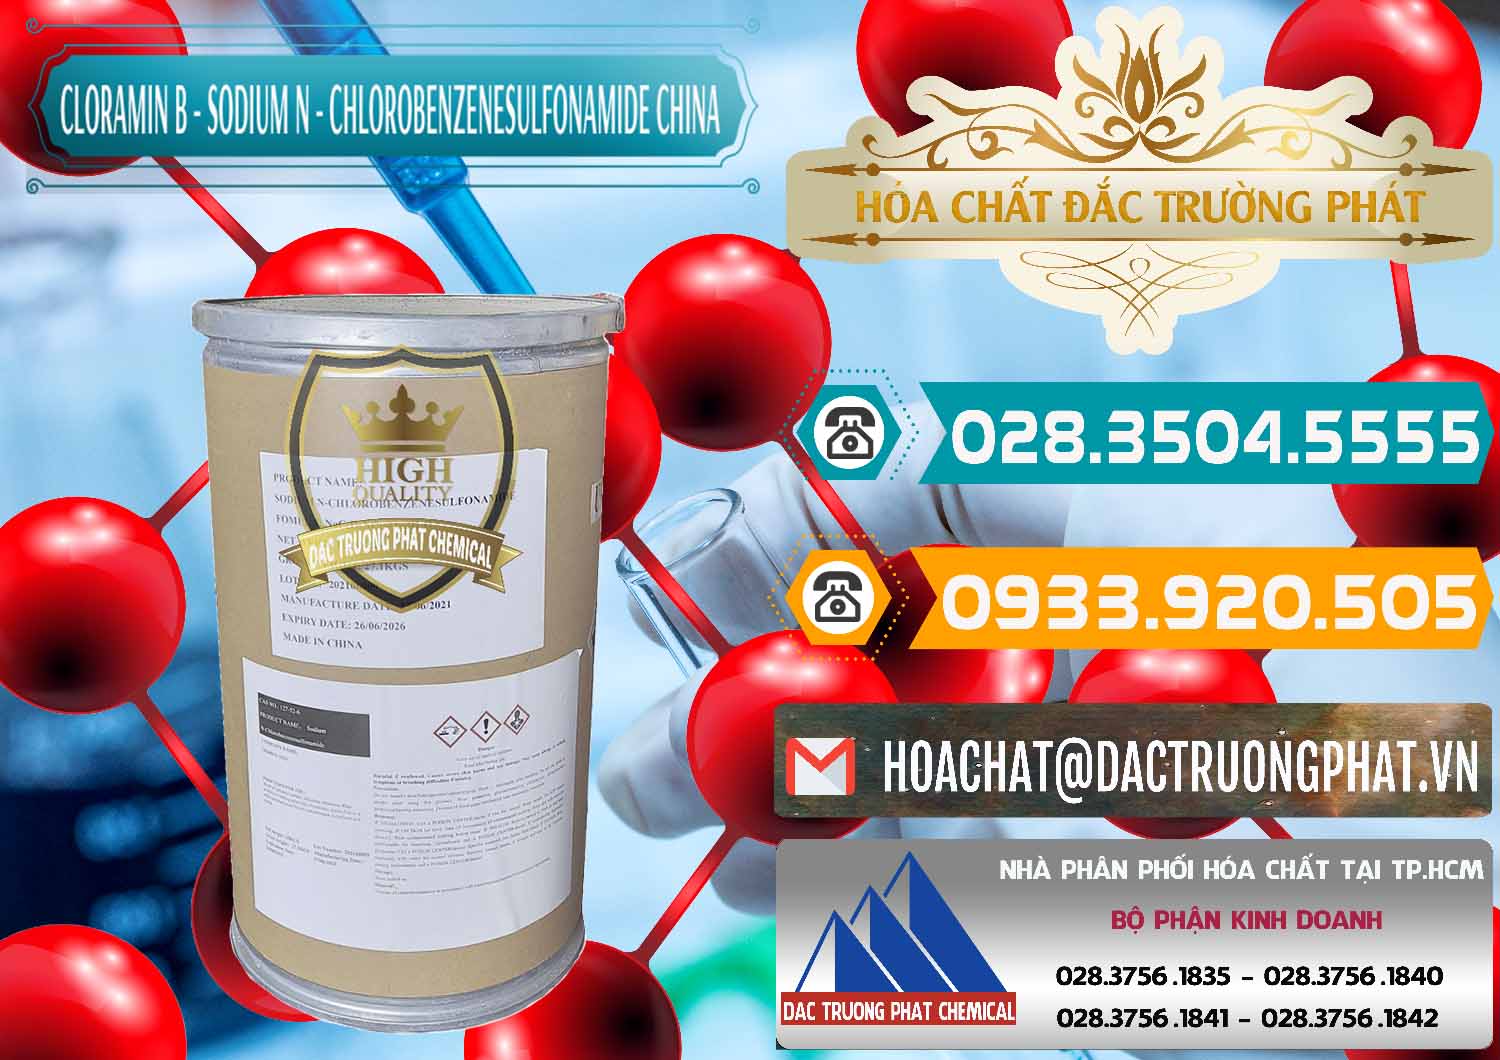 Công ty bán - cung cấp Cloramin B Khử Trùng, Diệt Khuẩn Trung Quốc China - 0298 - Cty kinh doanh và phân phối hóa chất tại TP.HCM - congtyhoachat.vn